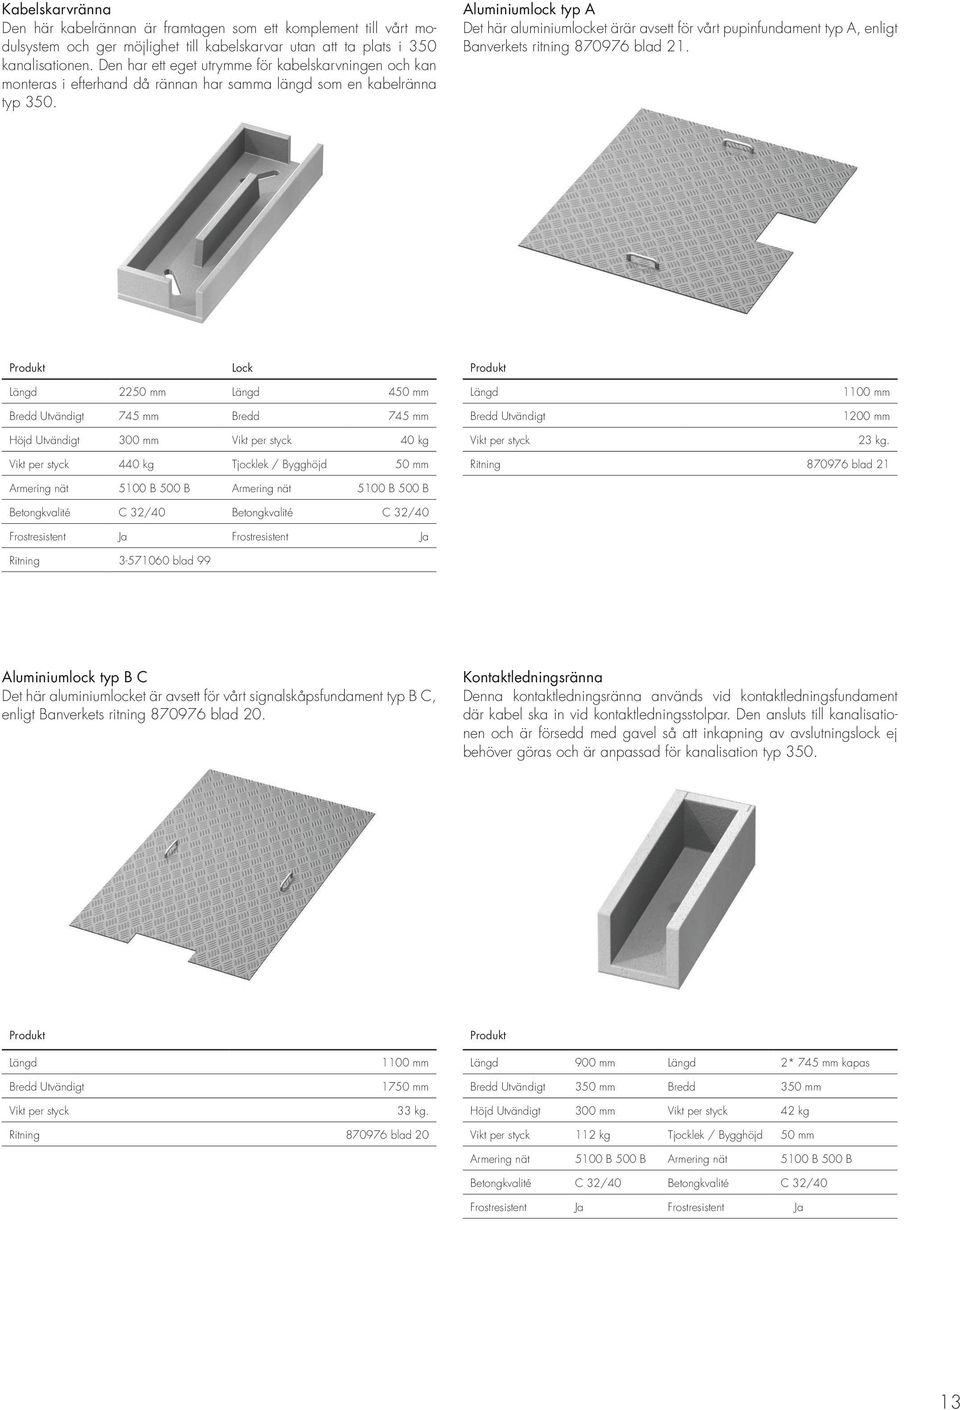 Aluminiumlock typ A Det här aluminiumlocket ärär avsett för vårt pupinfundament typ A, enligt Banverkets ritning 870976 blad 21.